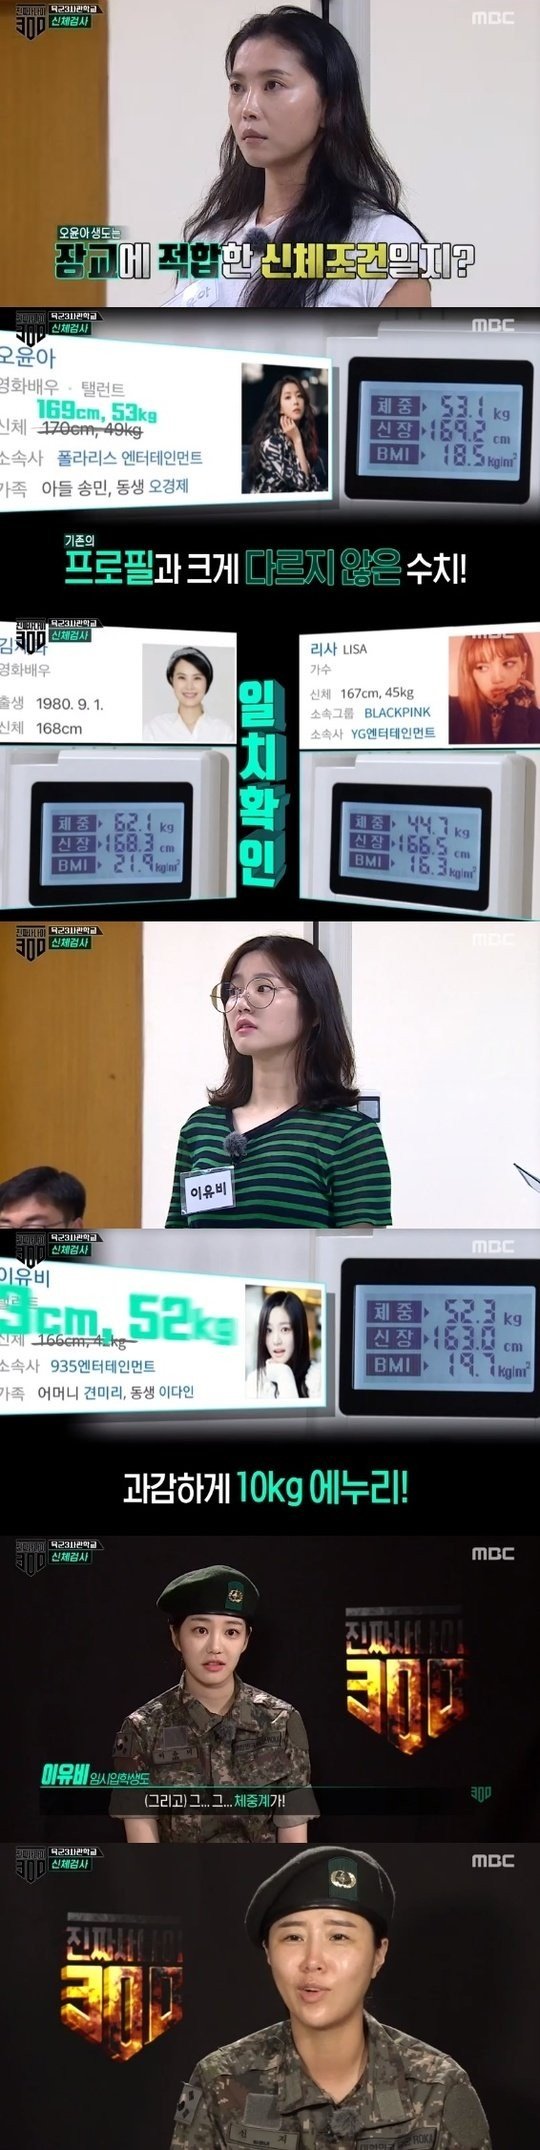 Шоу "Real Men 300" раскрыло тайну о весе актрисы Ли Ю Би